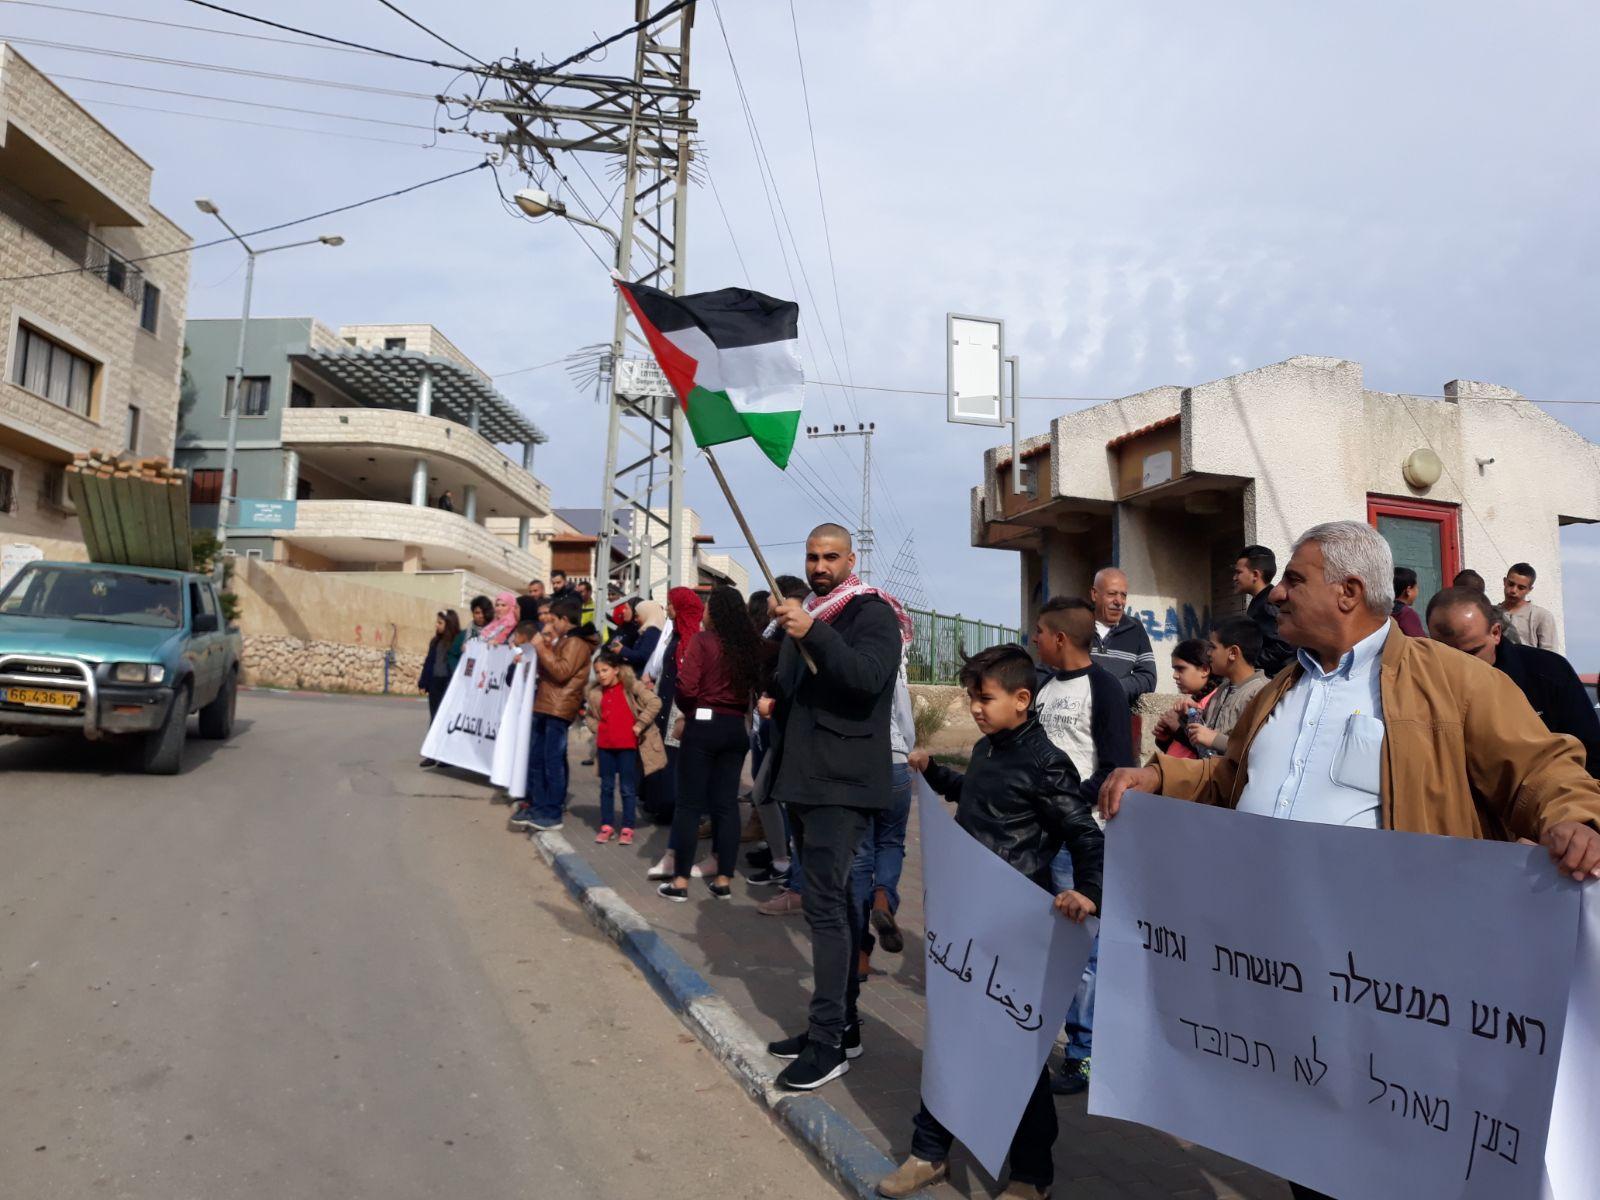  بركة: يتحتّم على فلسطينيي الداخل استقبال نتنياهو   بالصرامي على وجهه   2017122812295745